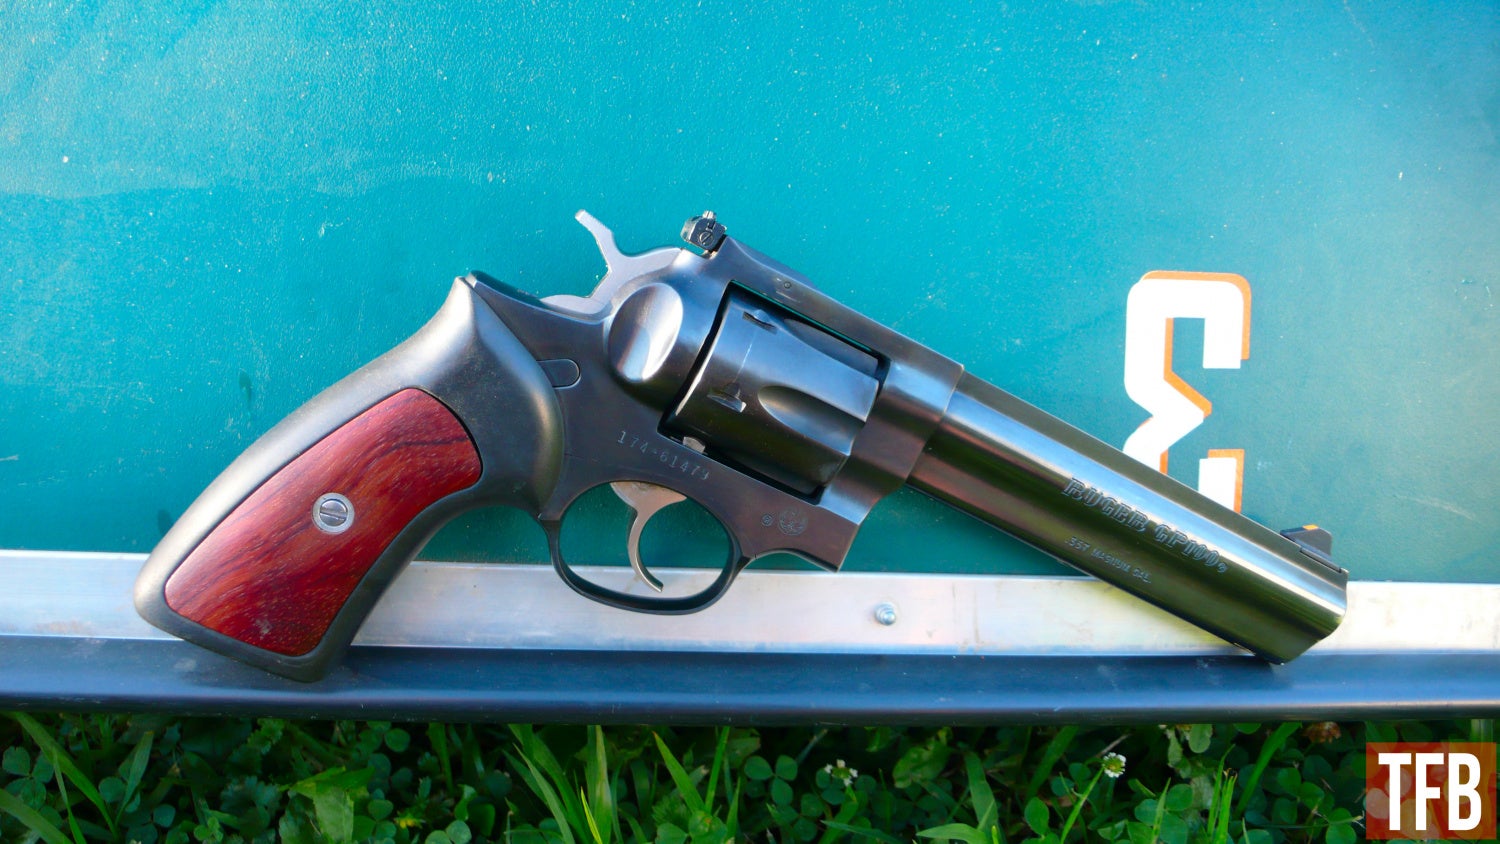 Top 5 Reasons You Should Get a Revolver